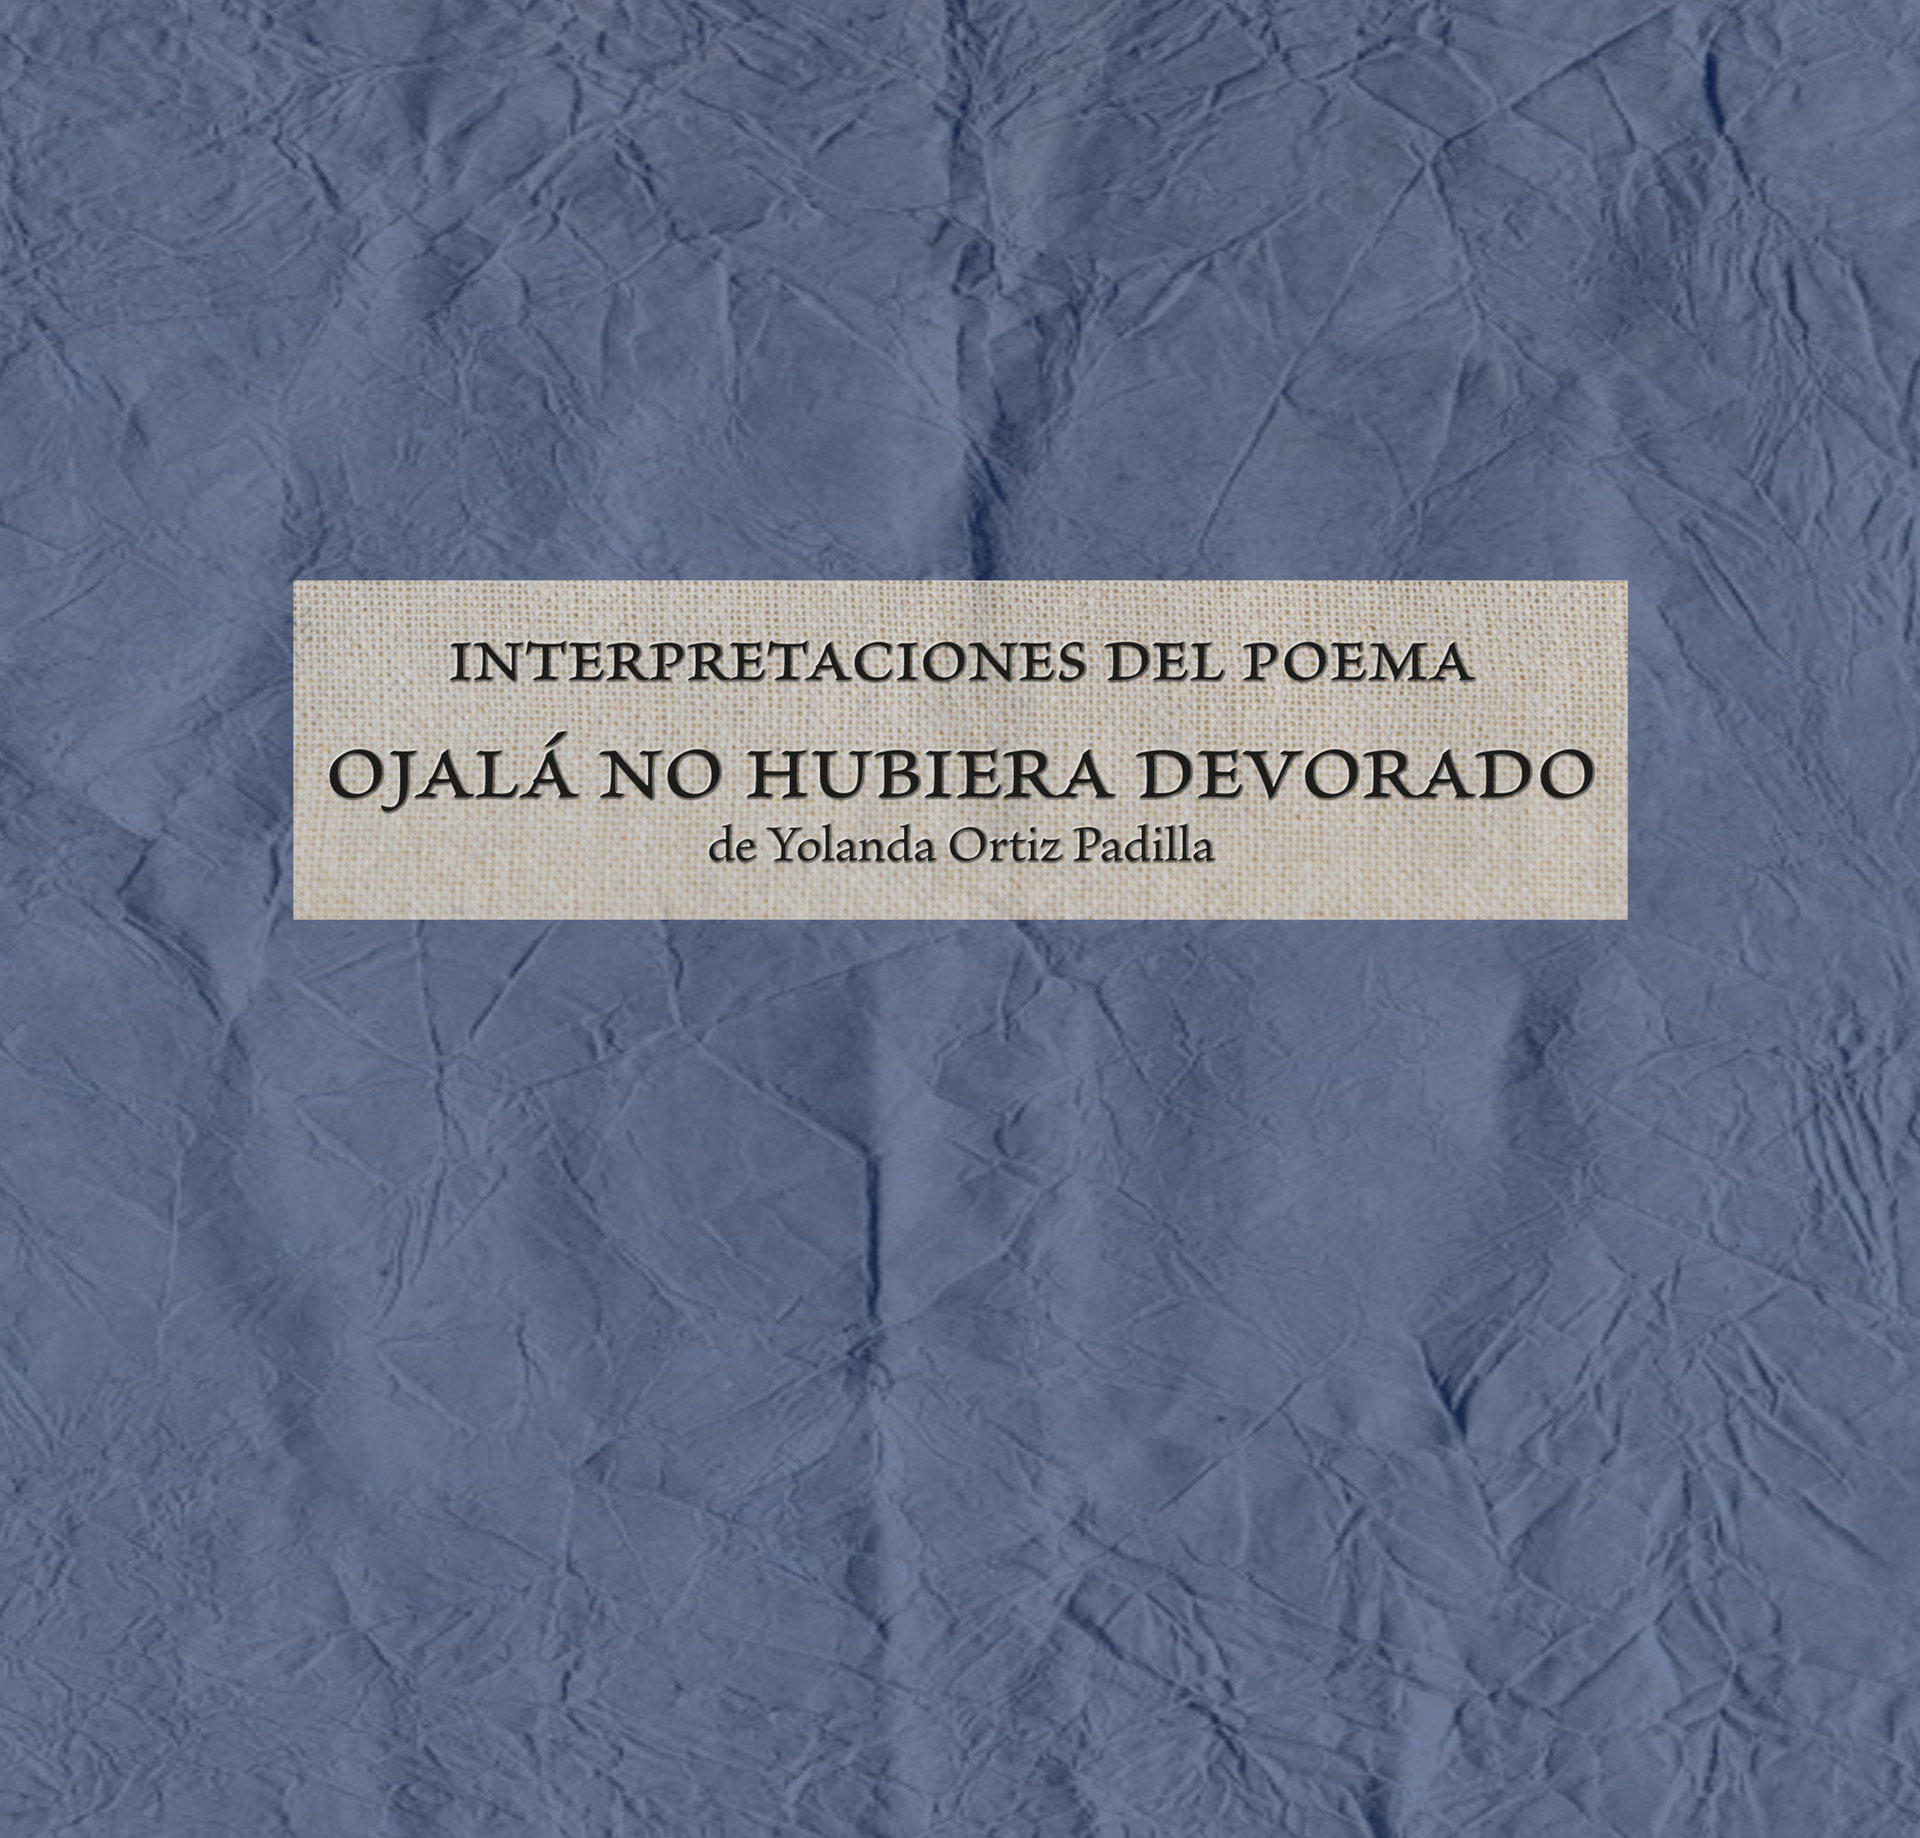 Imagen de portada del libro Interpretaciones del poema "Ojalá no hubiera devorado" de Yolanda Ortiz Padilla